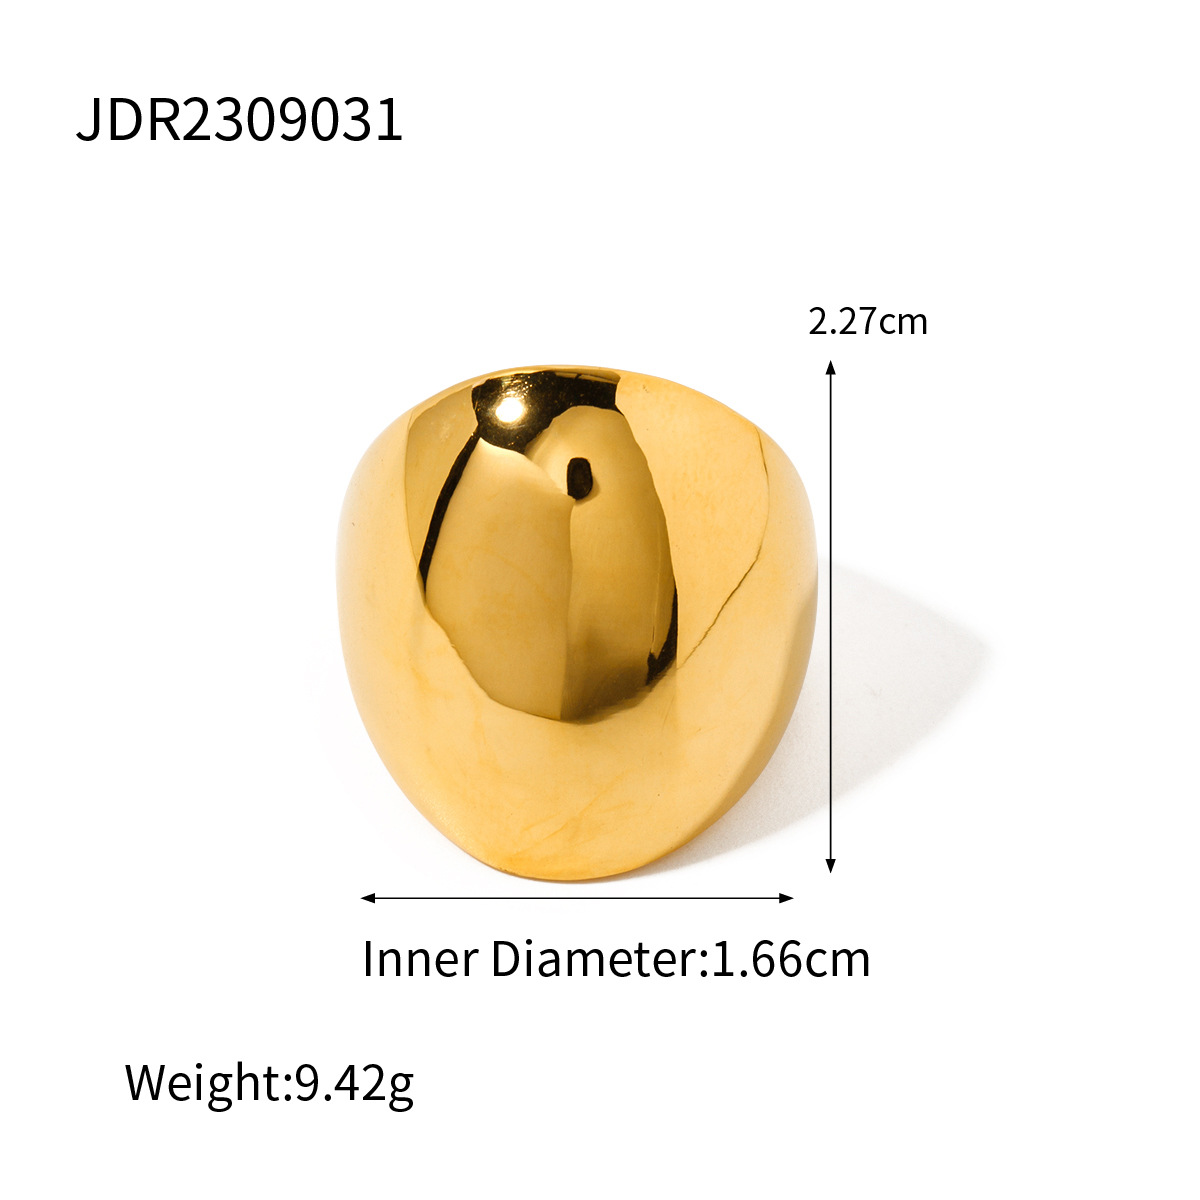 JDR2309031 US Size #6